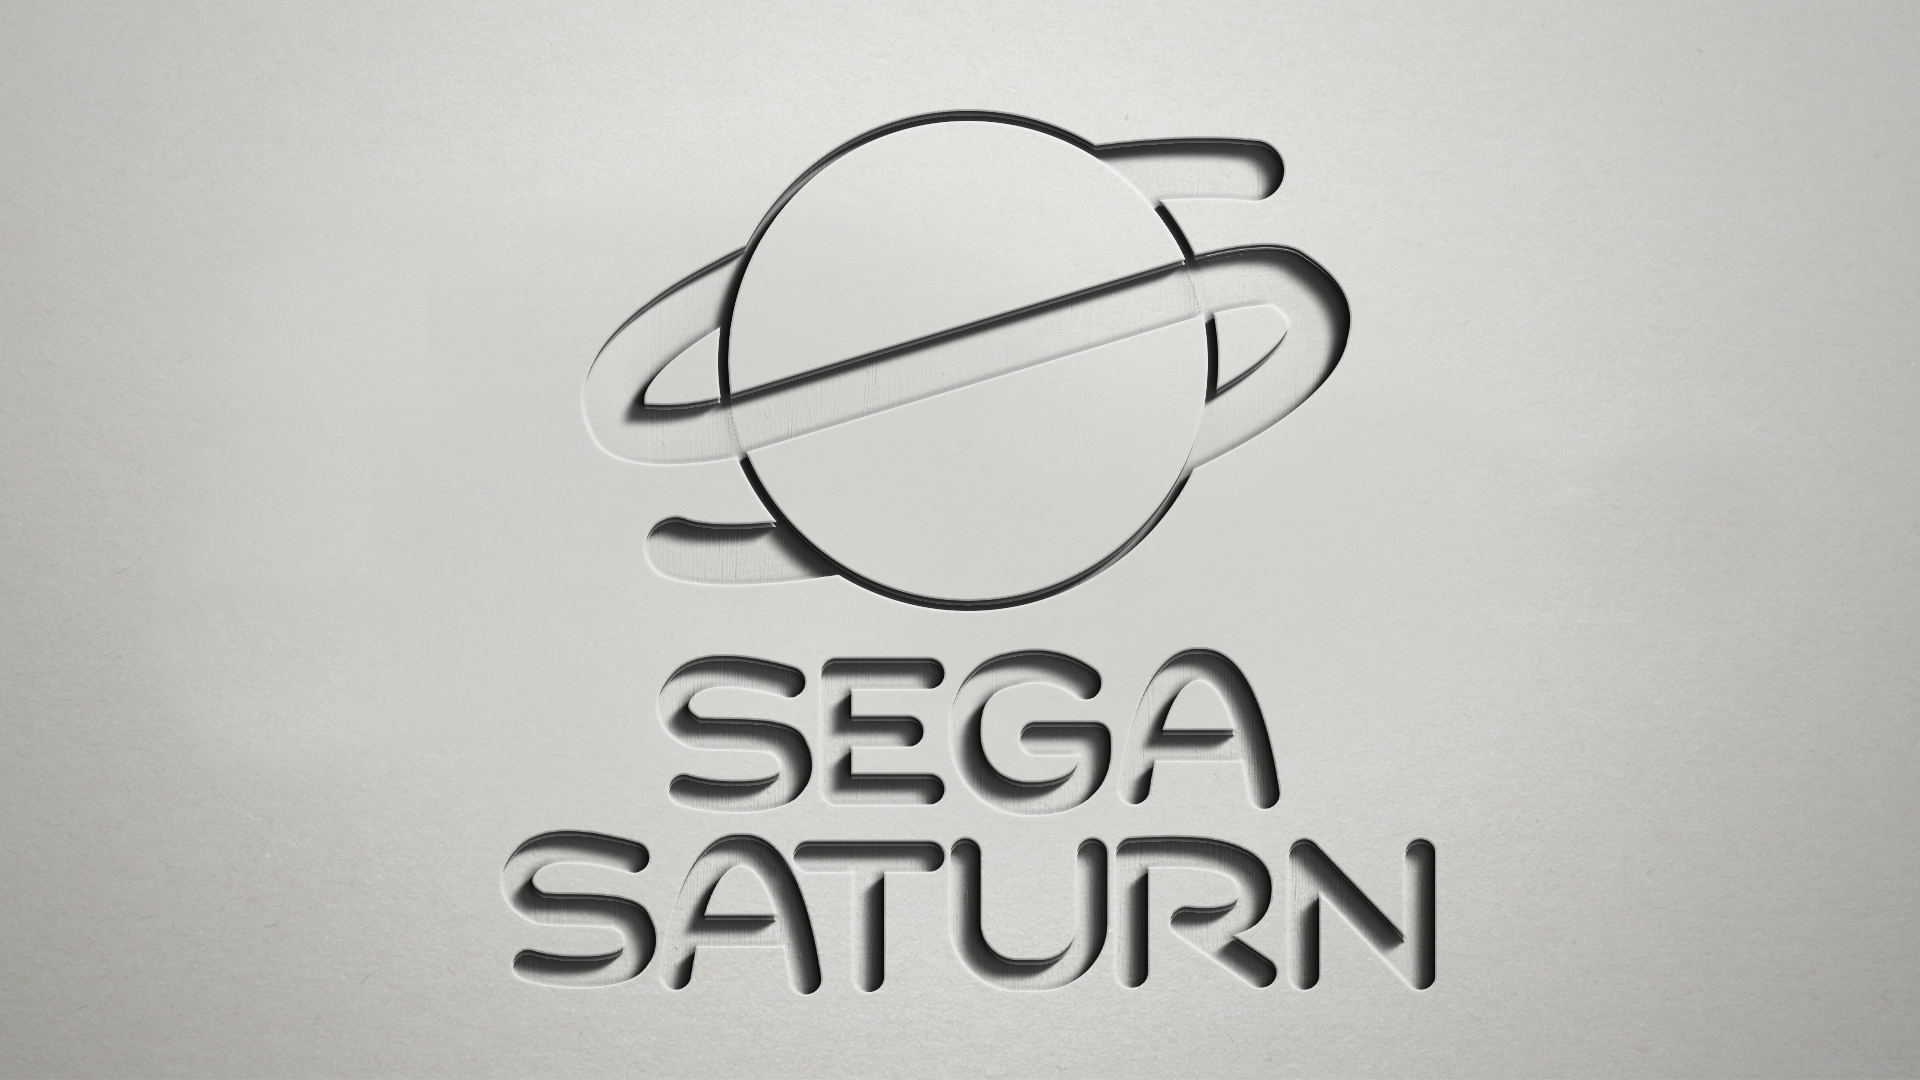 Sega Saturn Wallpapers